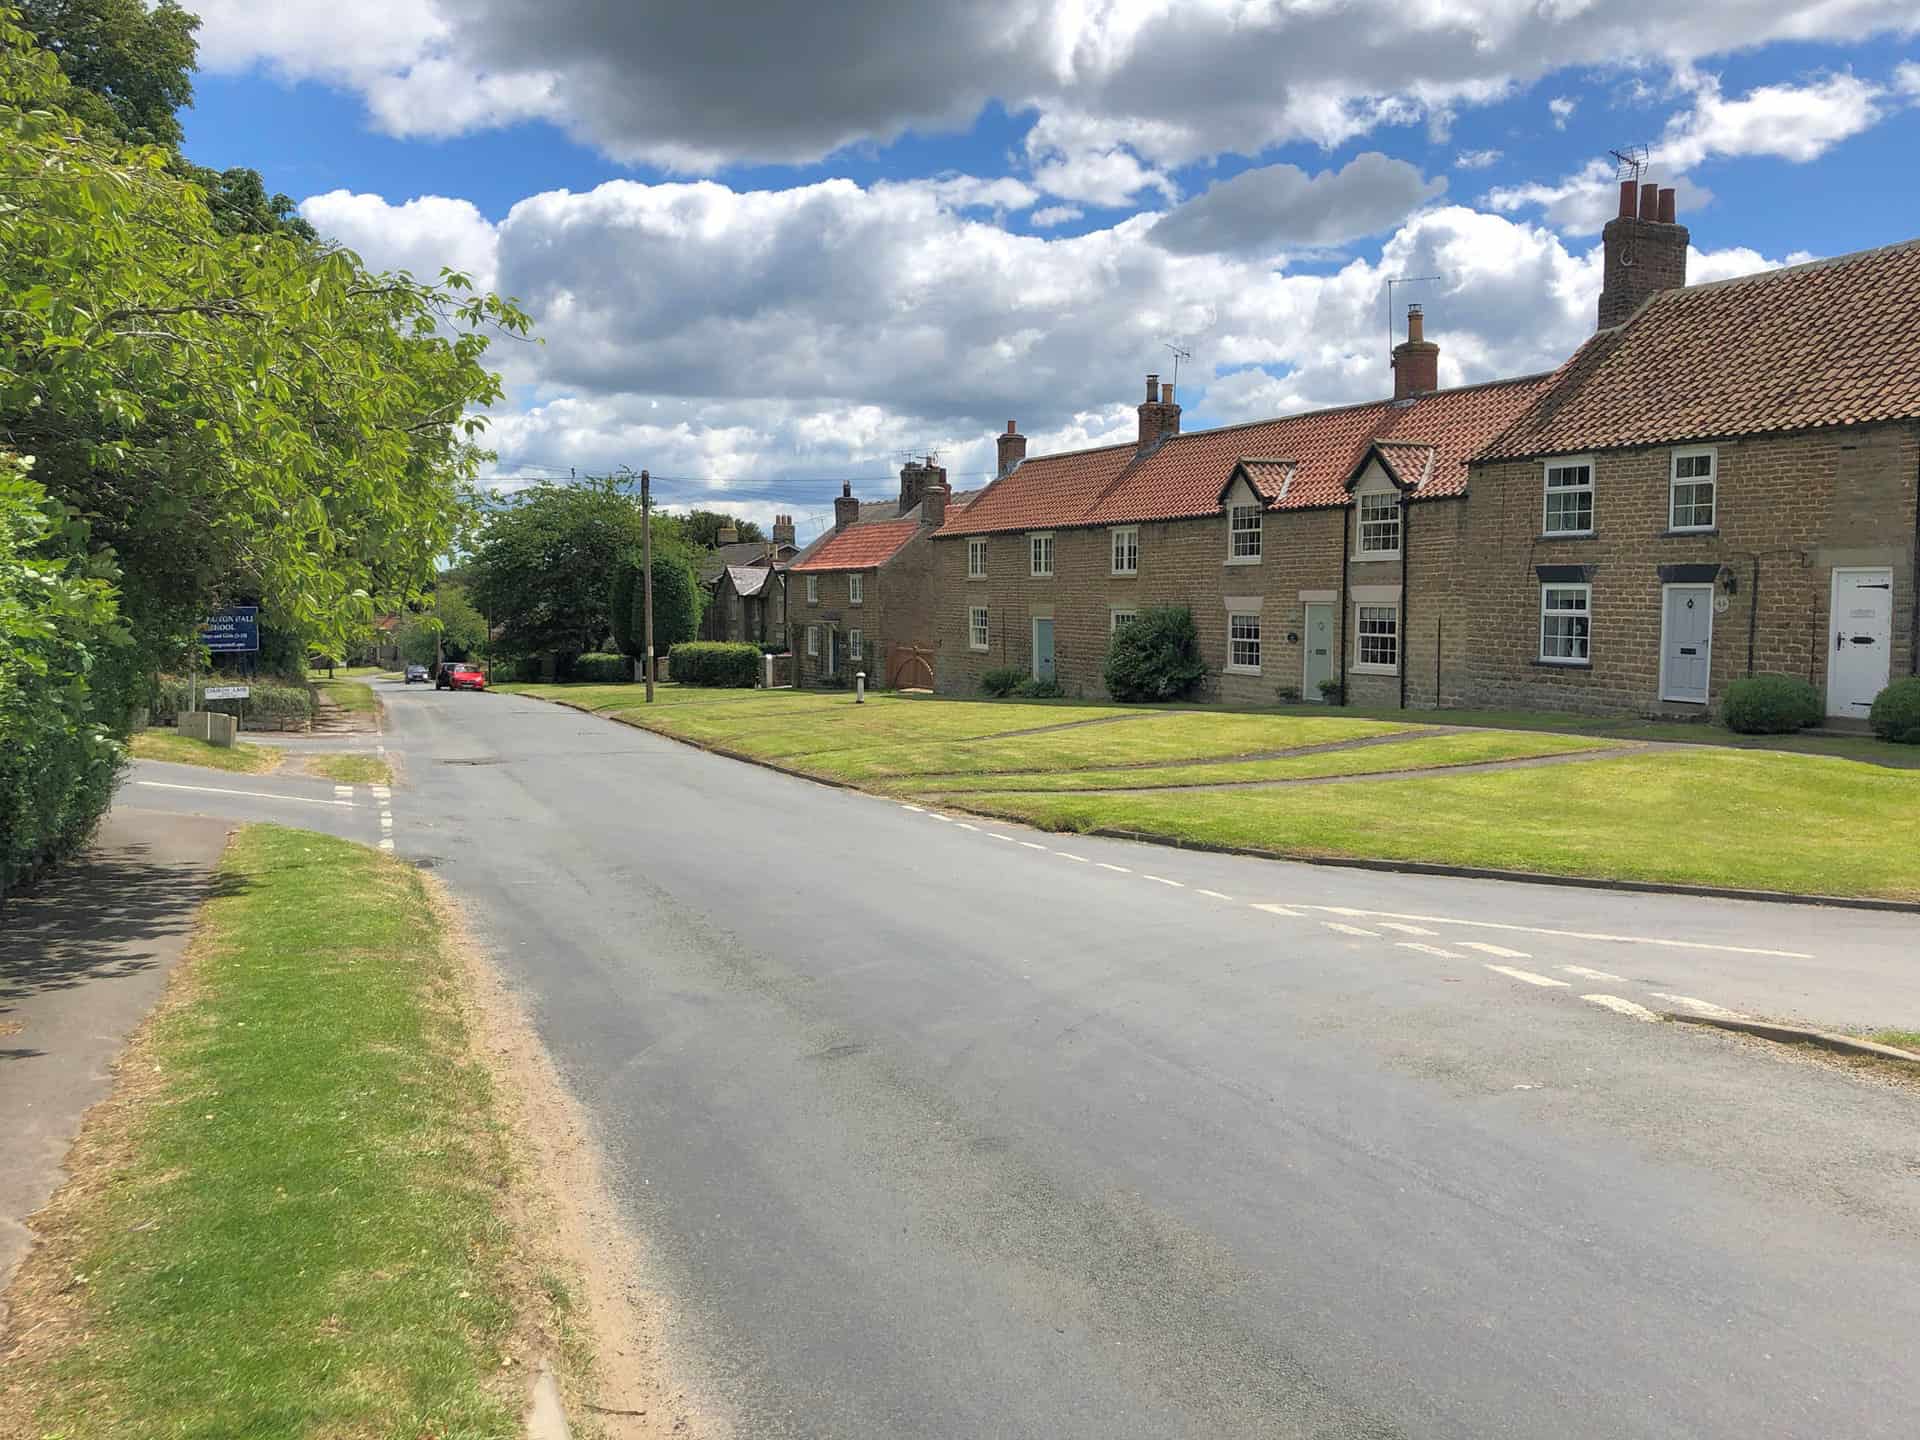 The village of Terrington.